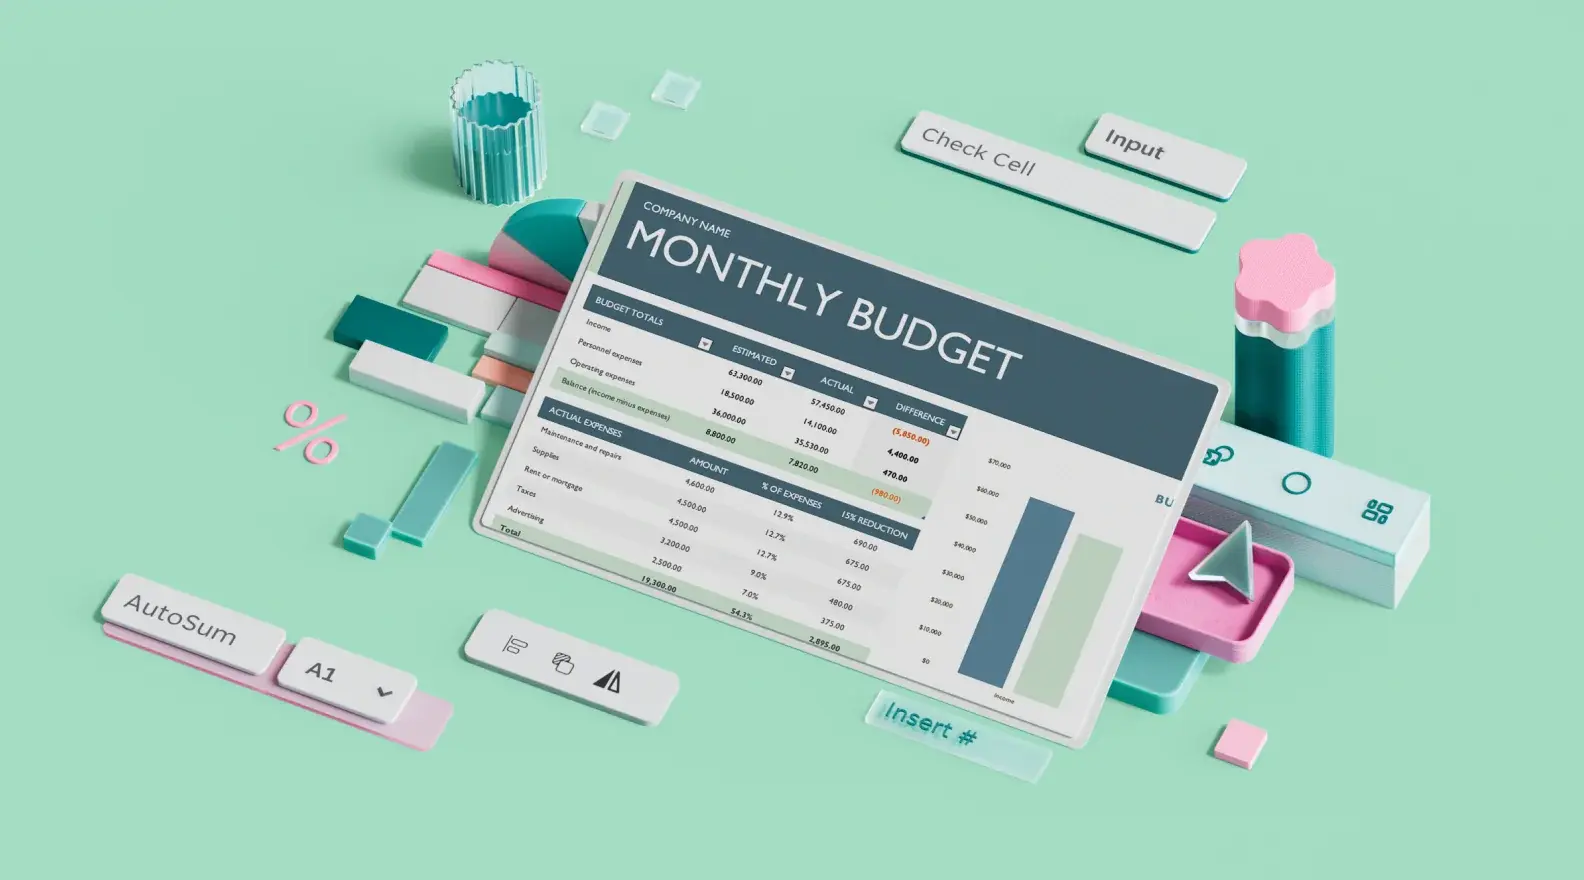 Microsoft Excel-skabelon til månedligt erhvervsbudget, omgivet af 3D-designelementer